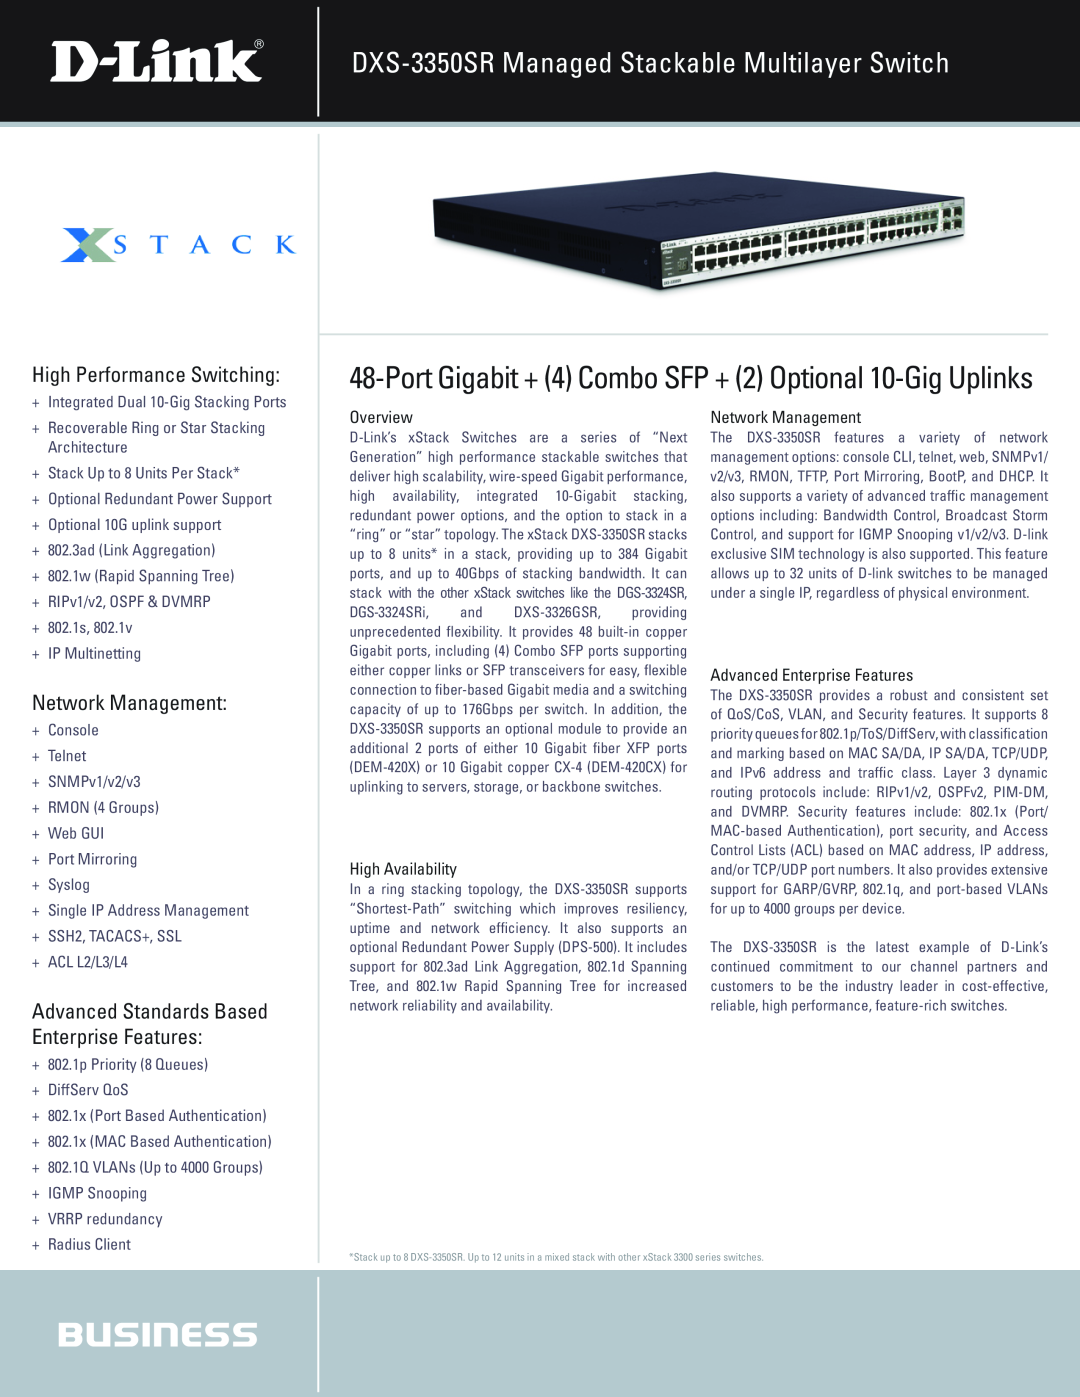 D-Link manual DXS-3350SR Managed Stackable Multilayer Switch, Port Gigabit + 4 Combo SFP + 2 Optional 10-Gig Uplinks 